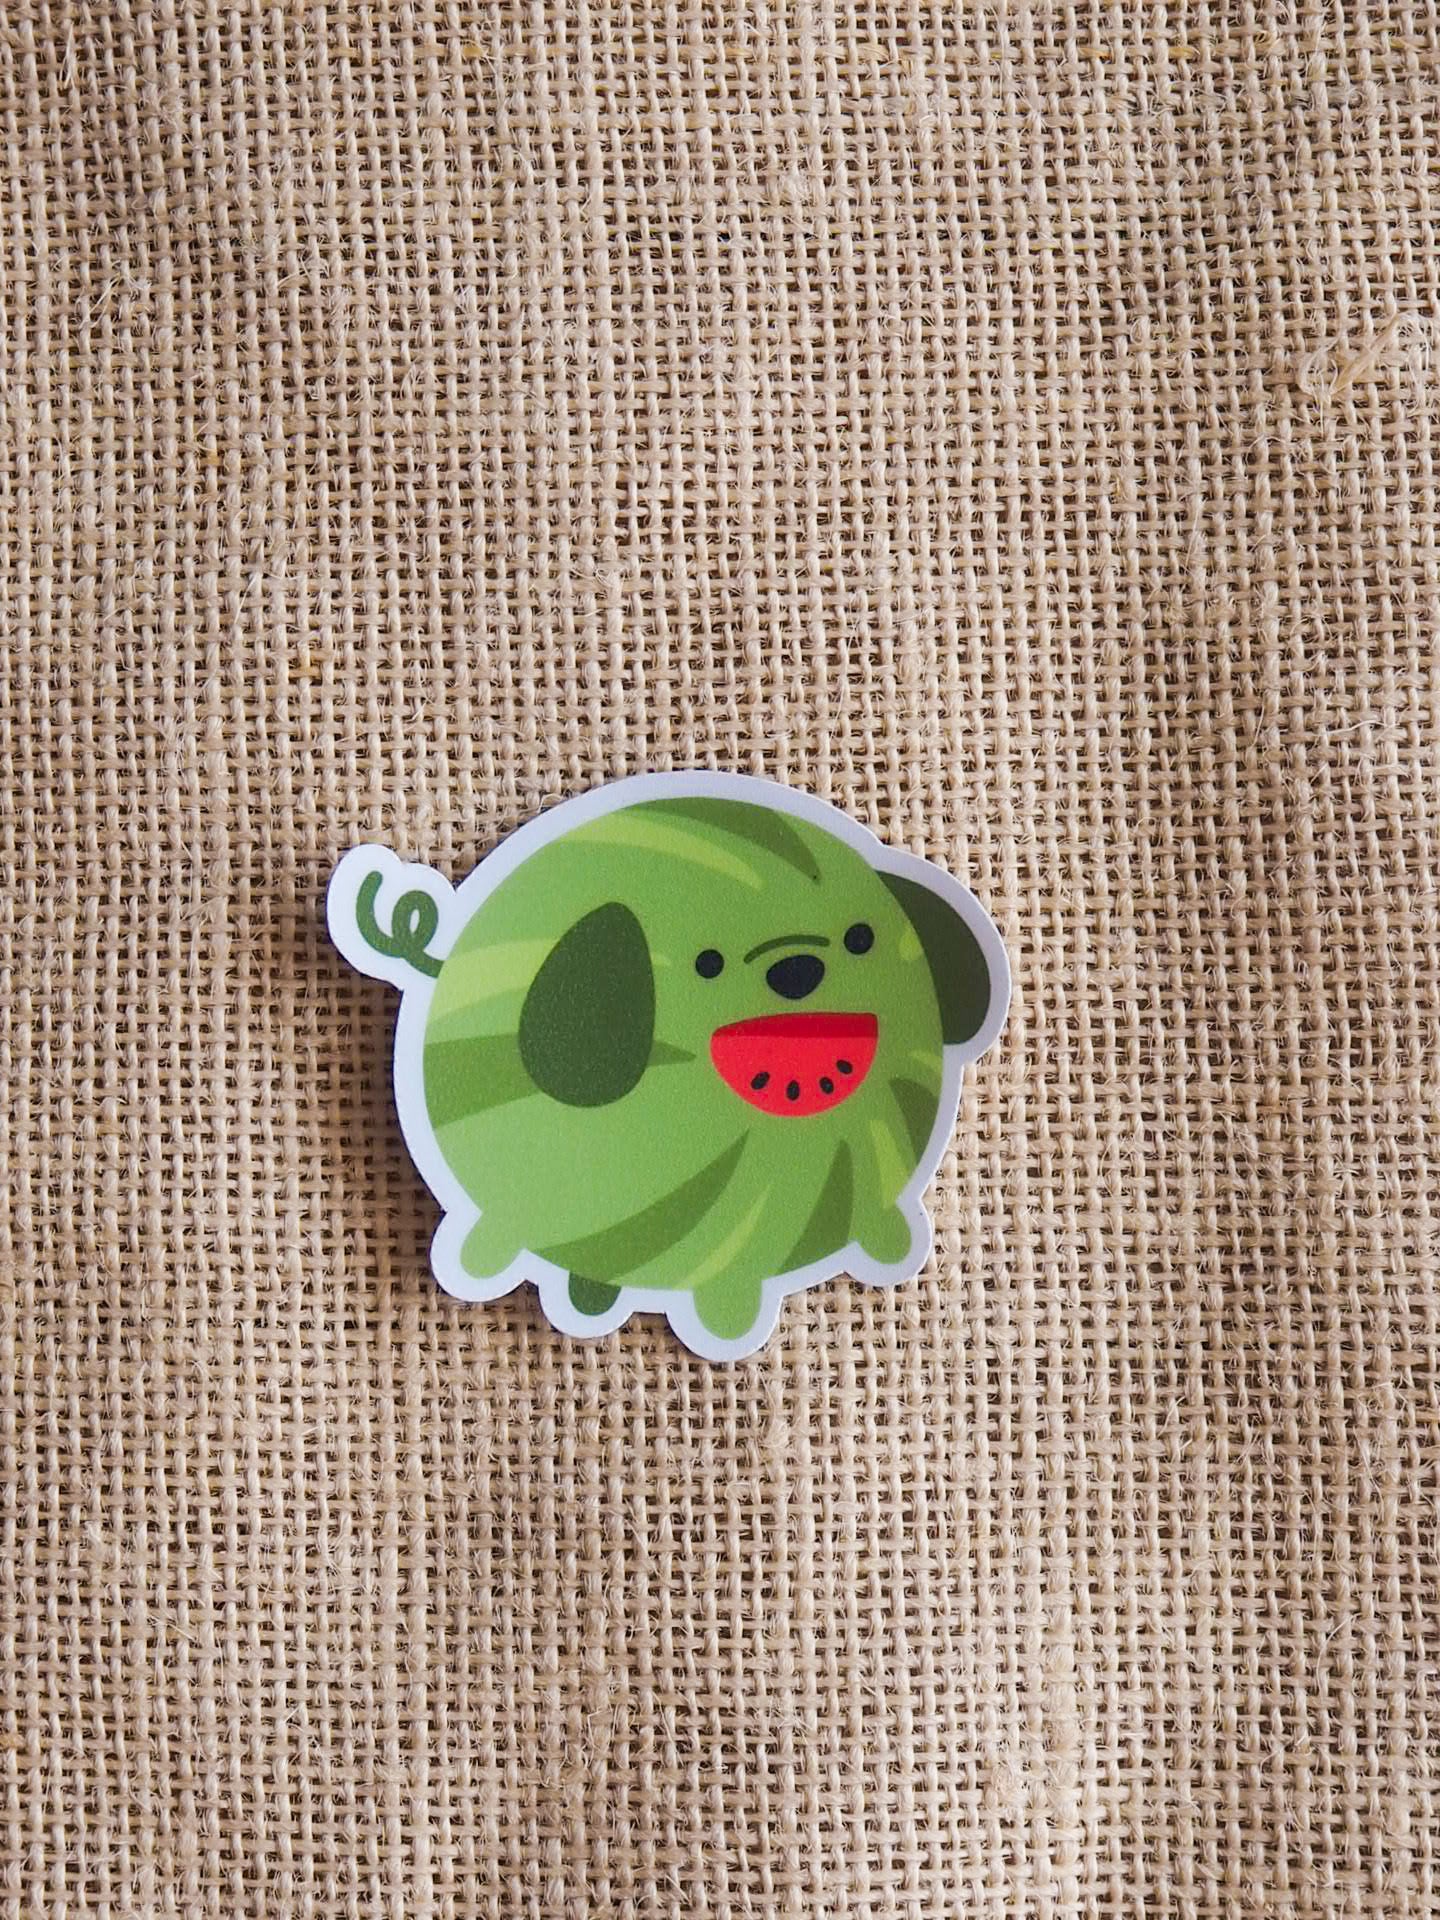 Fruit Dogs (Watermelon) Sticker